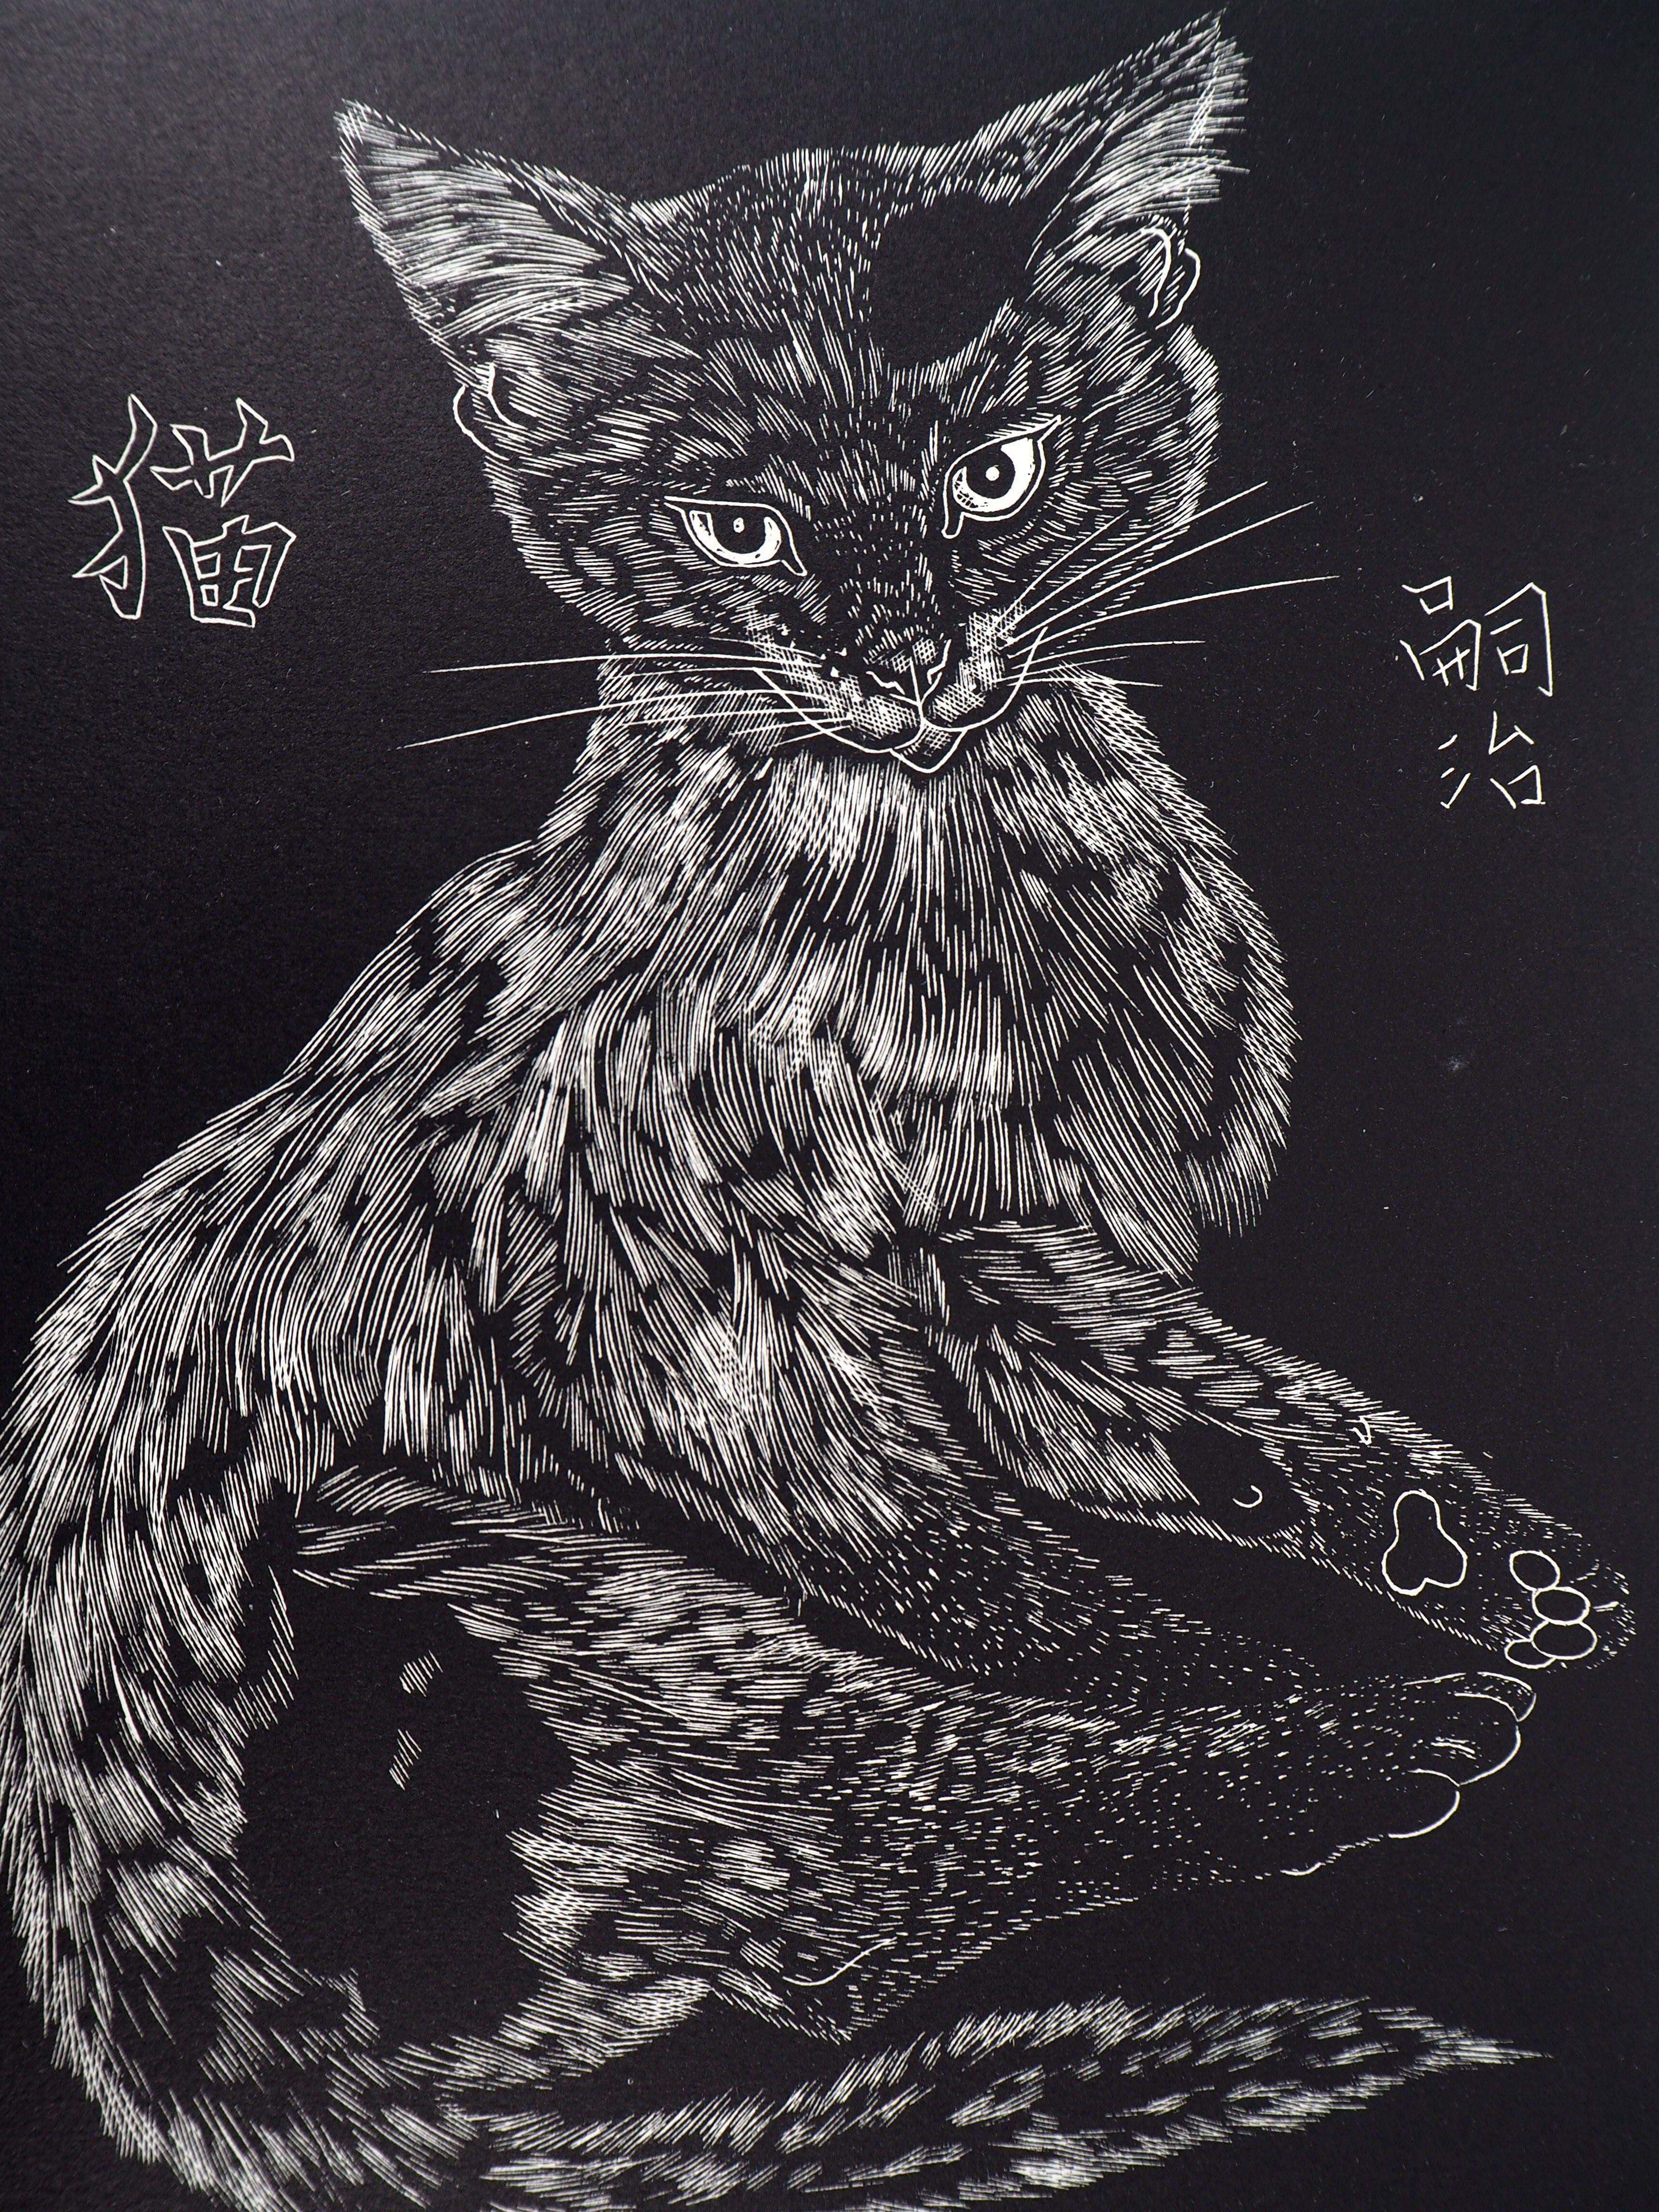 Cat - Taille sur bois originale, signée et numérotée /160 - Buisson #27-03 1